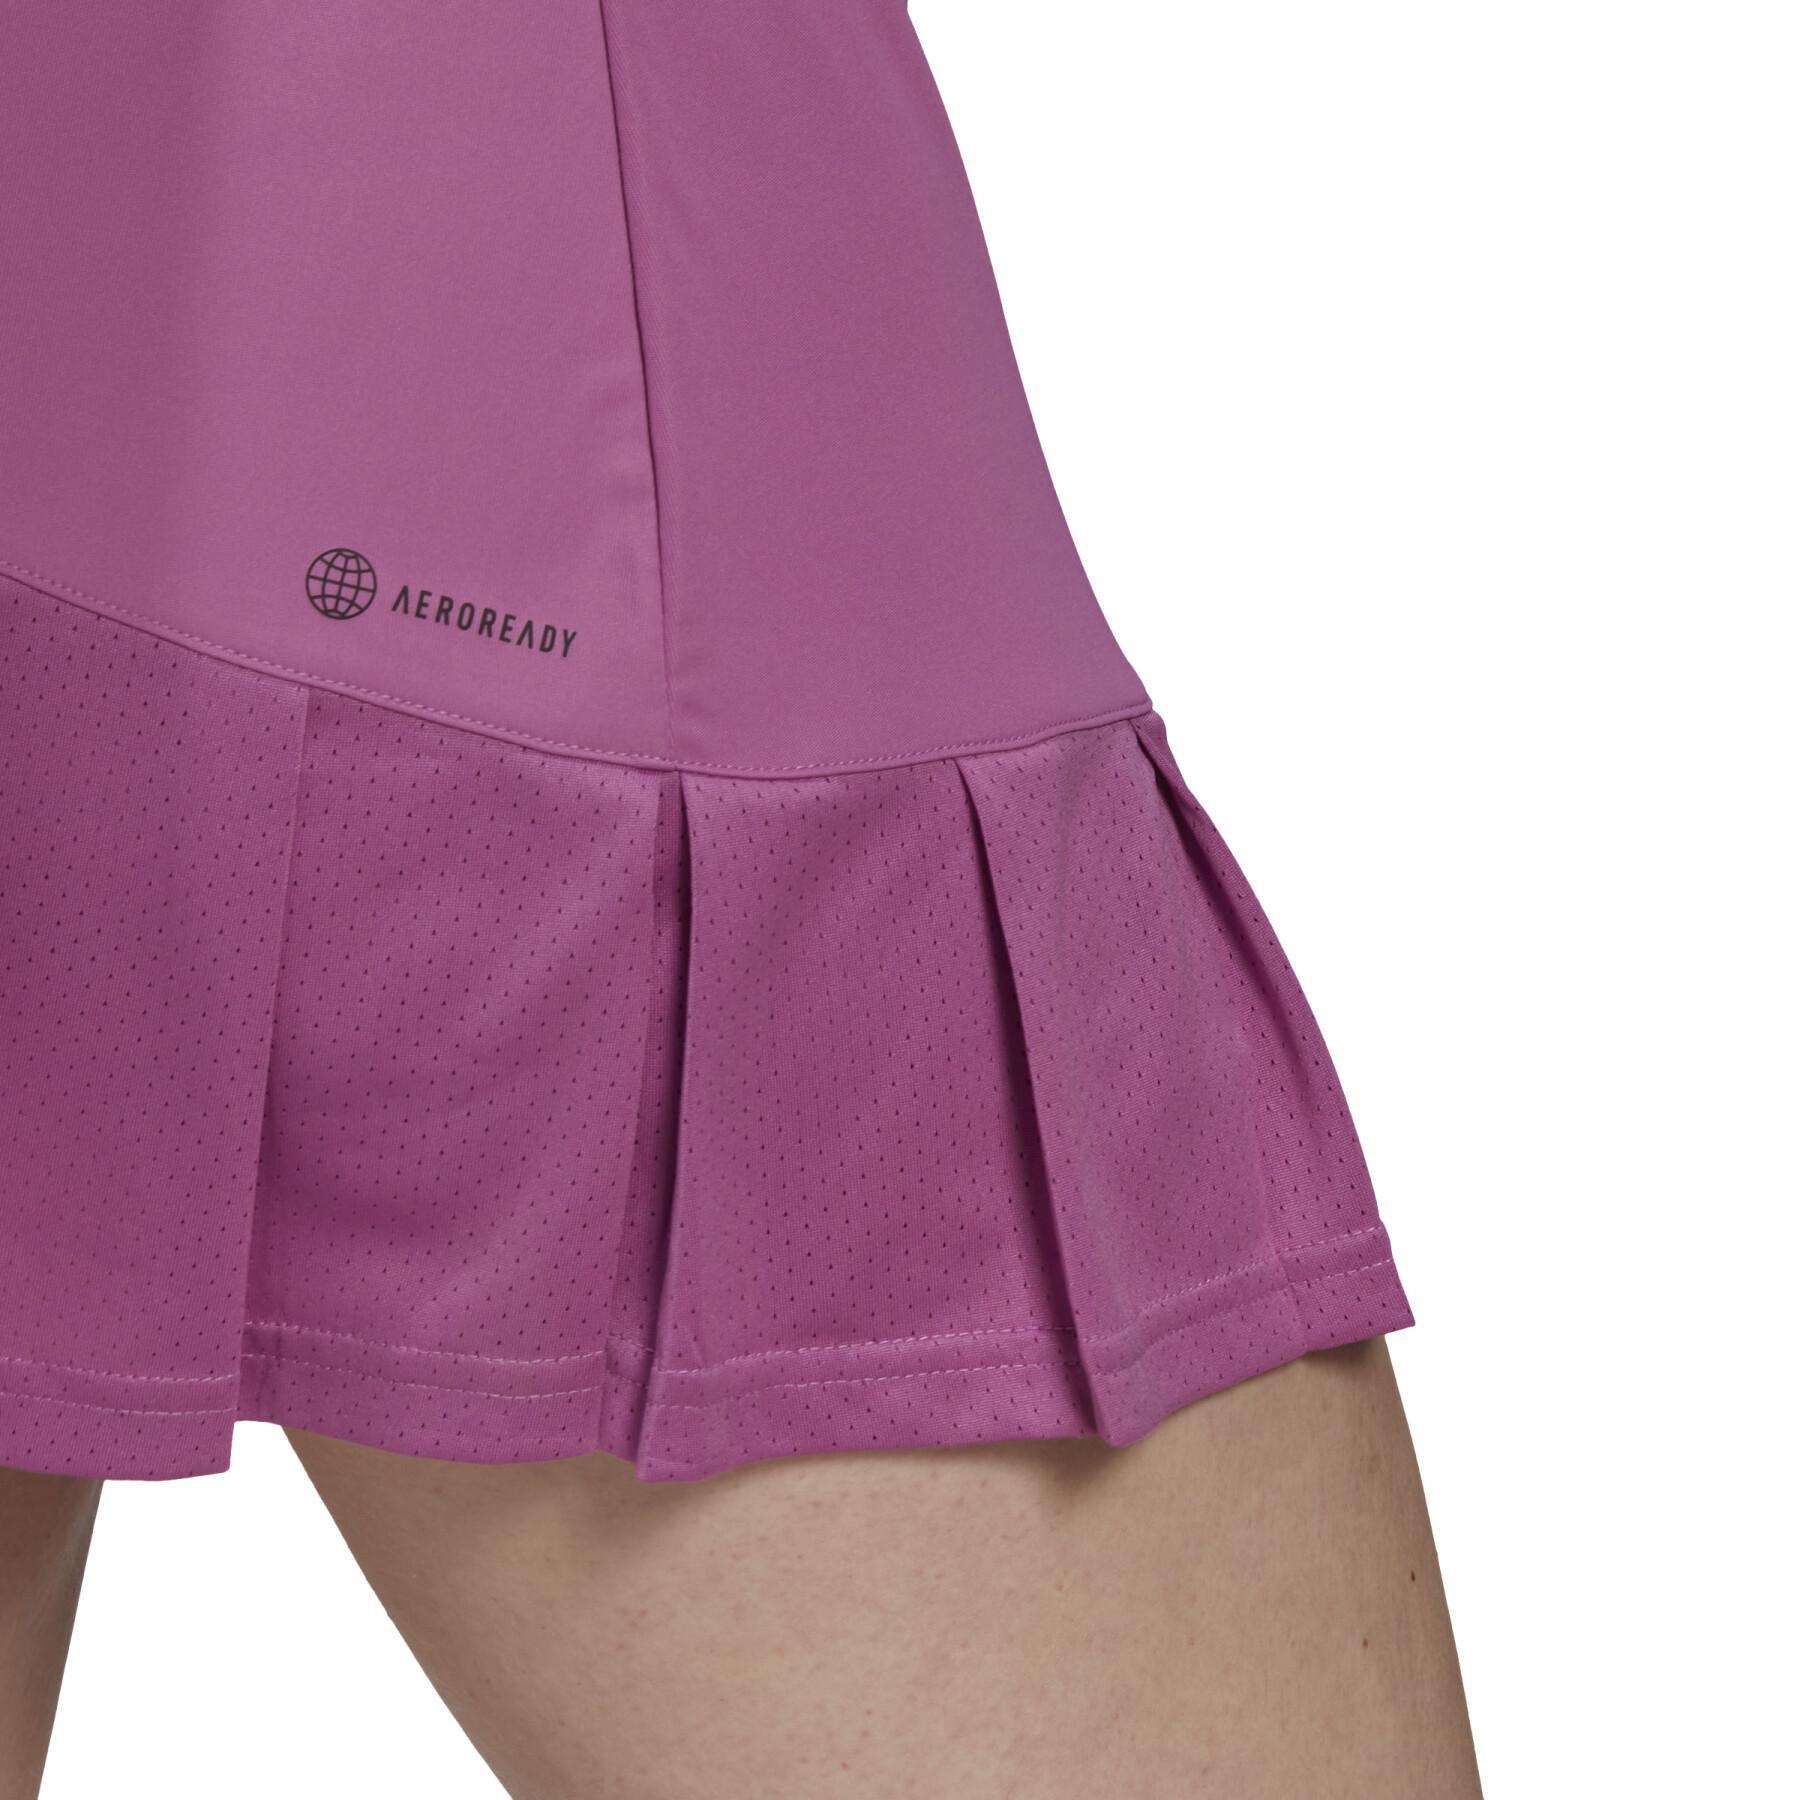 Kleid Frau adidas Club Tennis